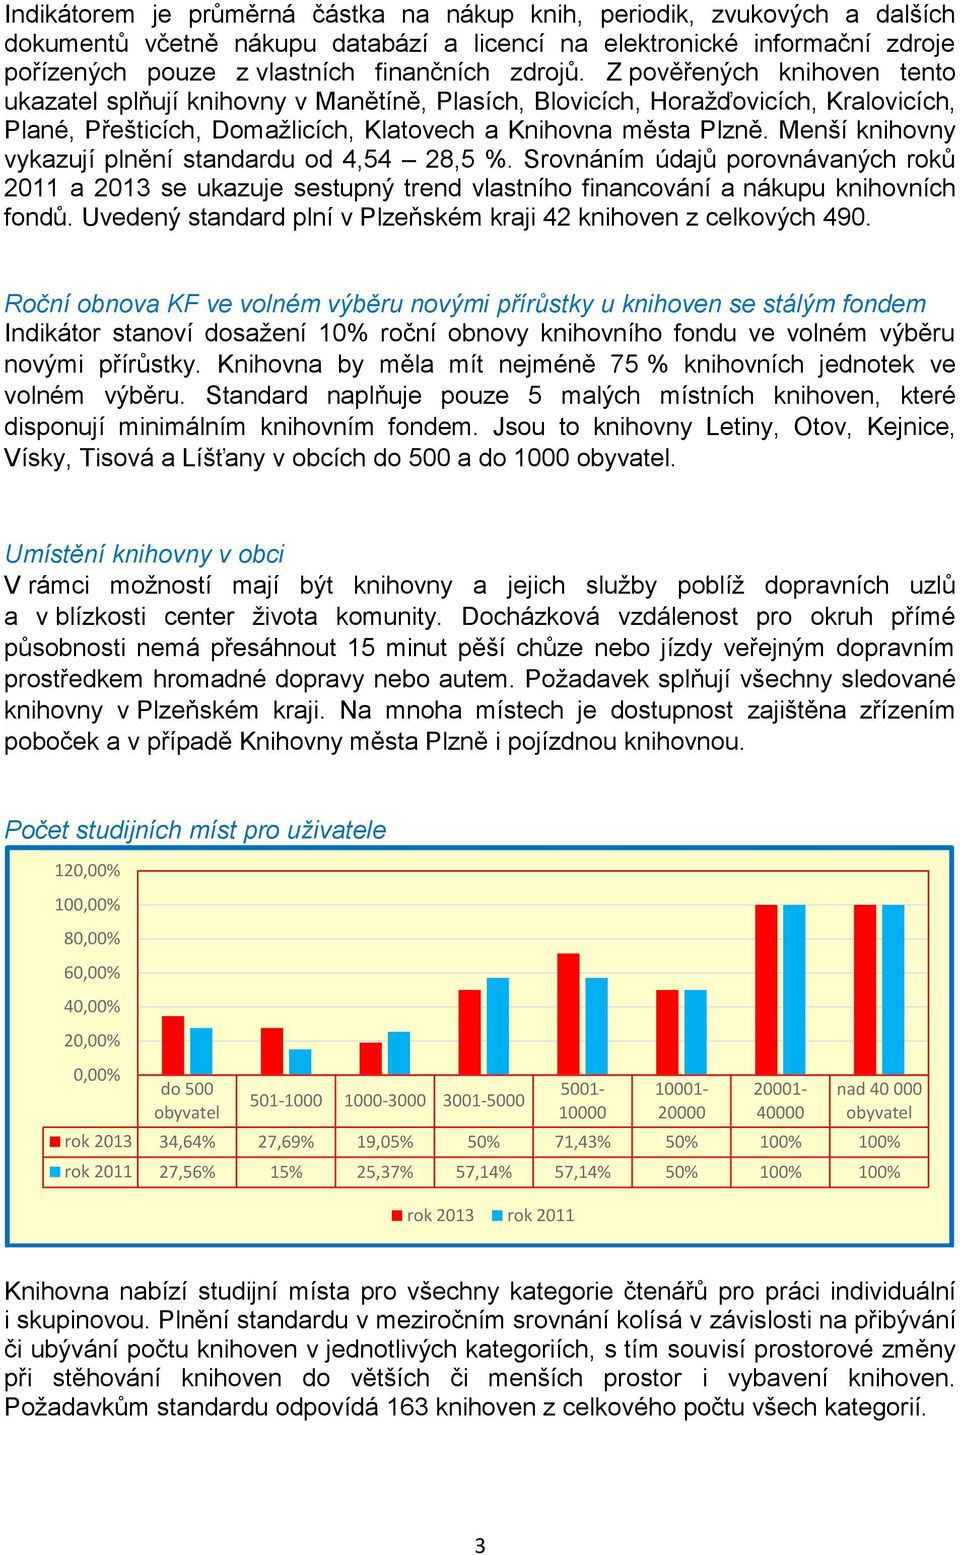 Menší knihovny vykazují plnění standardu od 4,54 28,5 %. Srovnáním údajů porovnávaných roků 2011 a 2013 se ukazuje sestupný trend vlastního financování a nákupu knihovních fondů.